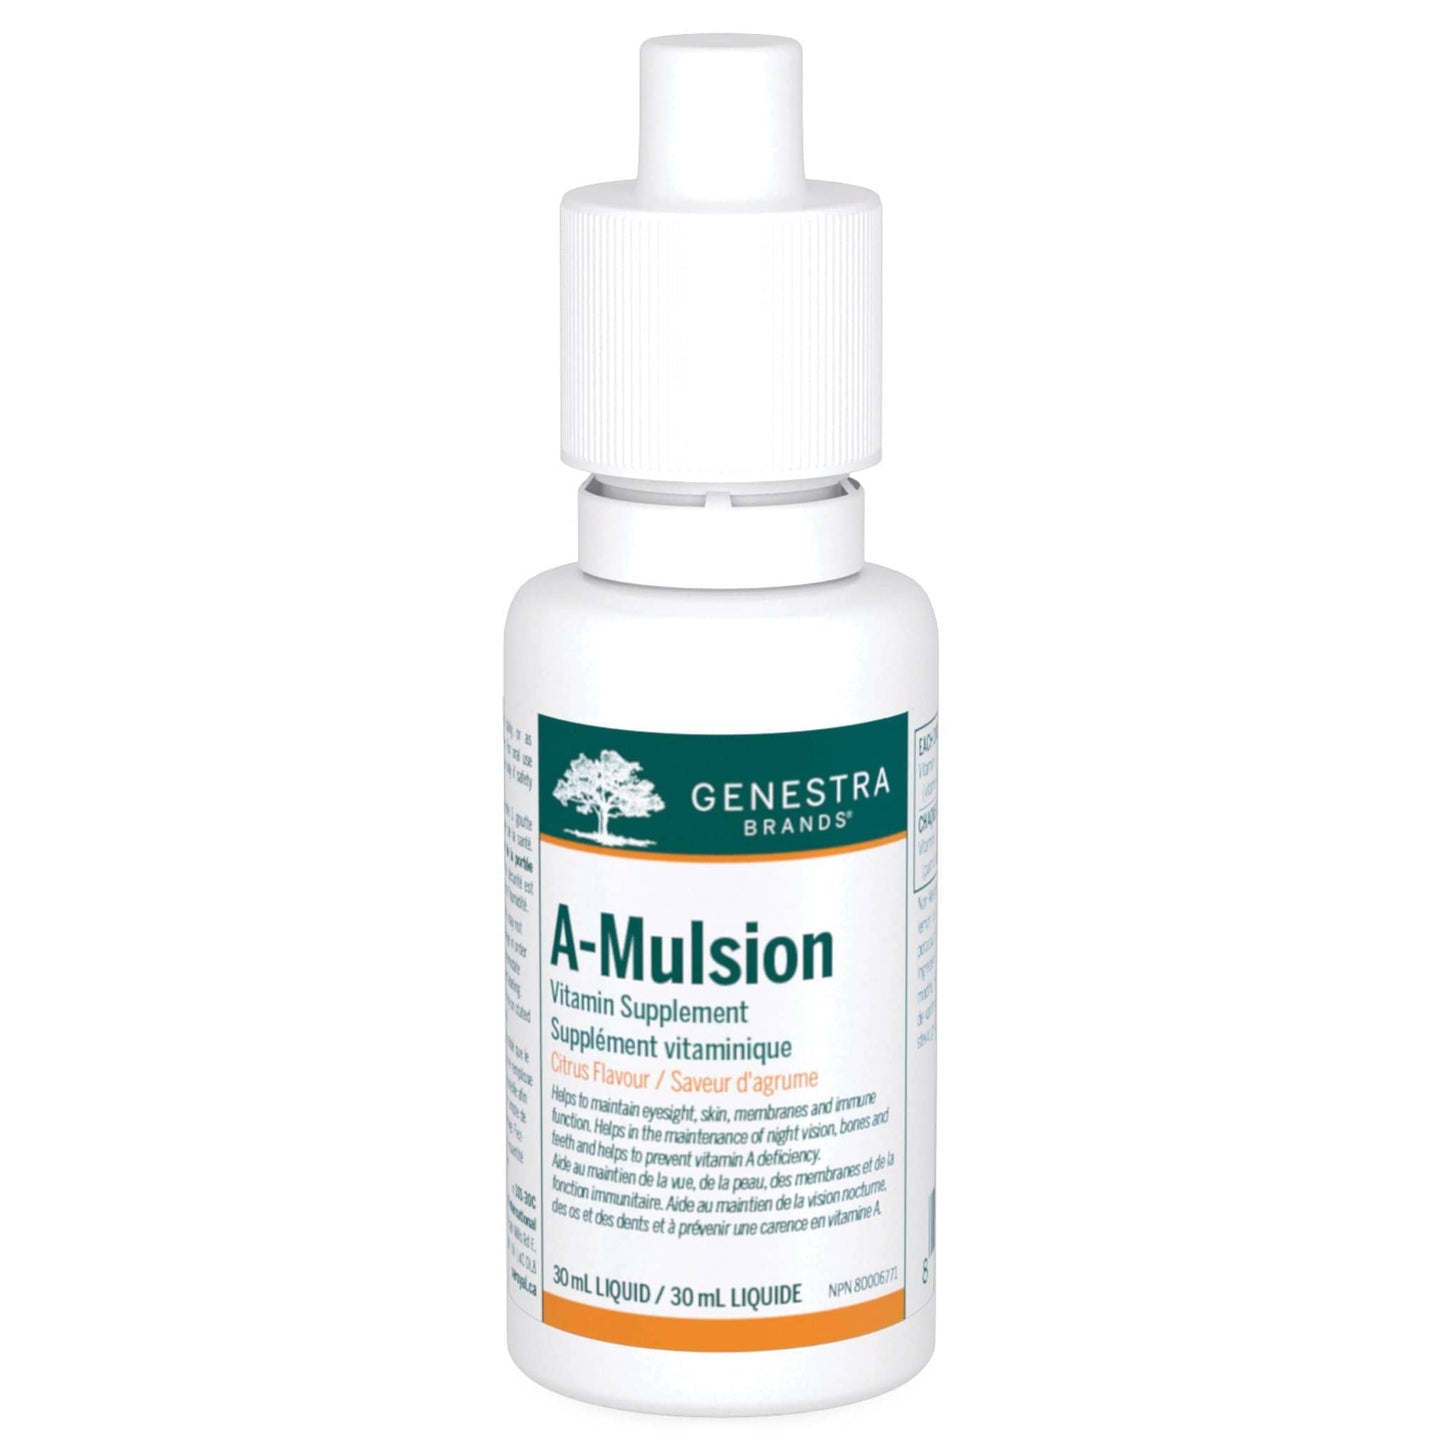 Genestra A-Mulsion 30ml Liquid